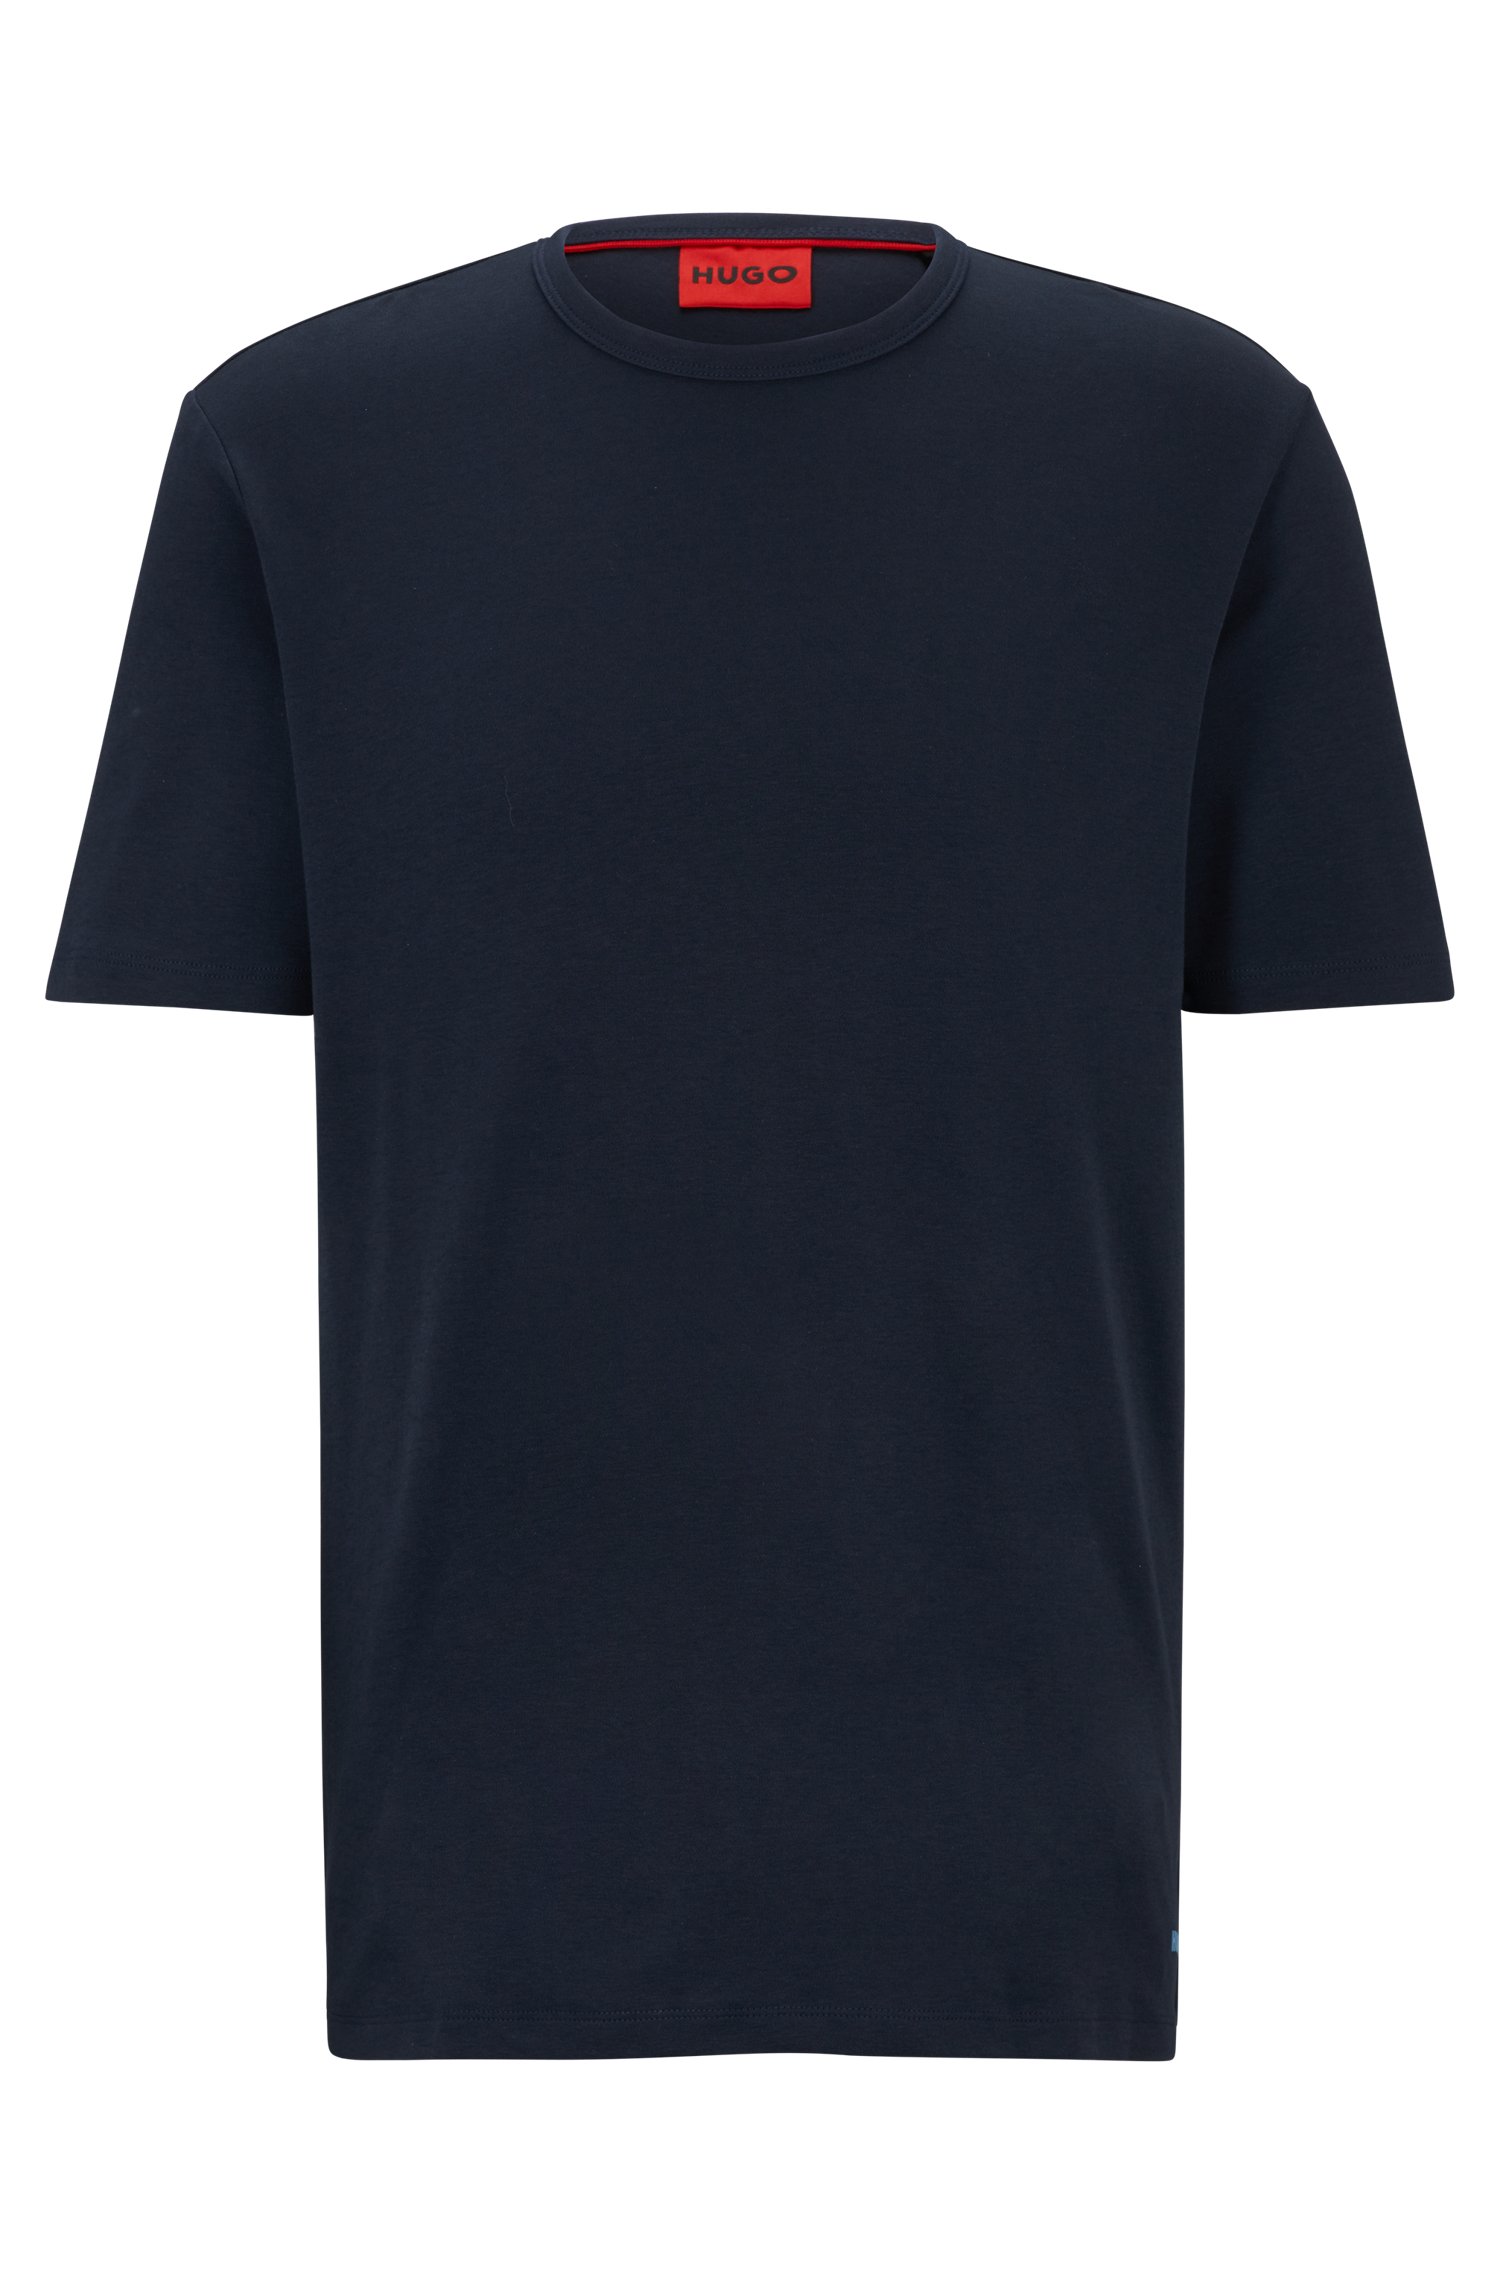 Футболка Hugo Pima-cotton Regular-fit With Contrast Logo, тёмно-синий футболка hugo pima cotton regular fit with contrast logo чёрный